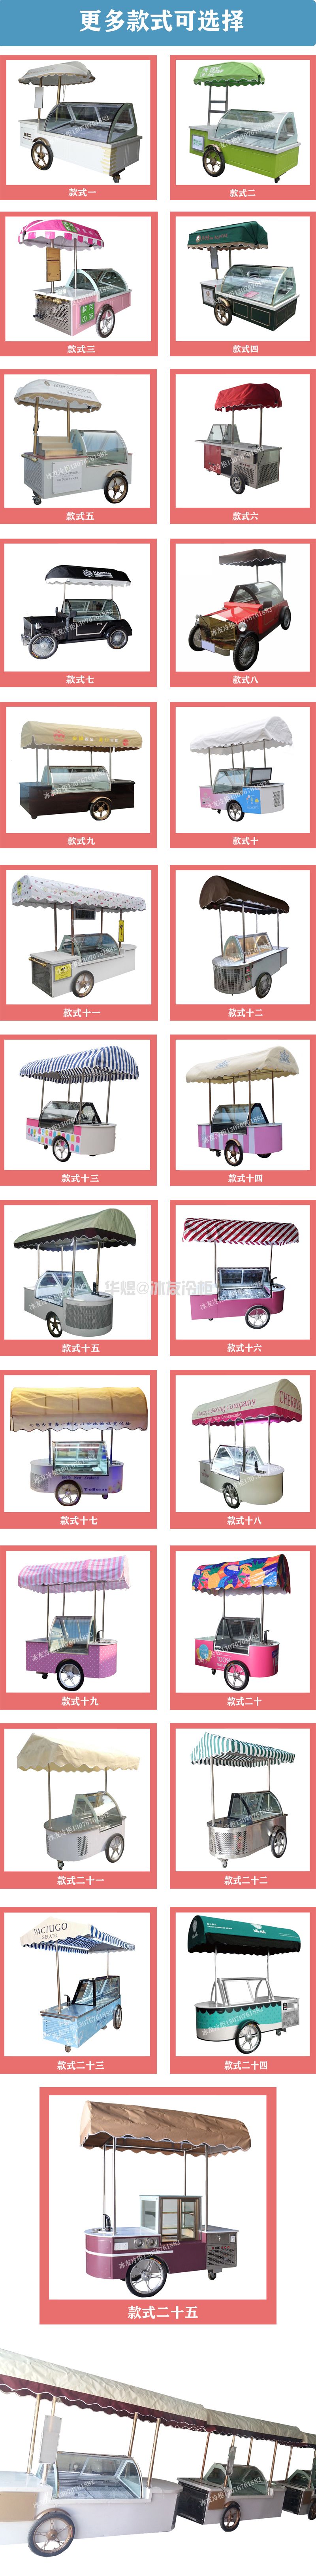 冰友咖啡色小型冰淇淋车硬质冰激凌车移动雪糕车冰淇淋小吃售卖车(图16)